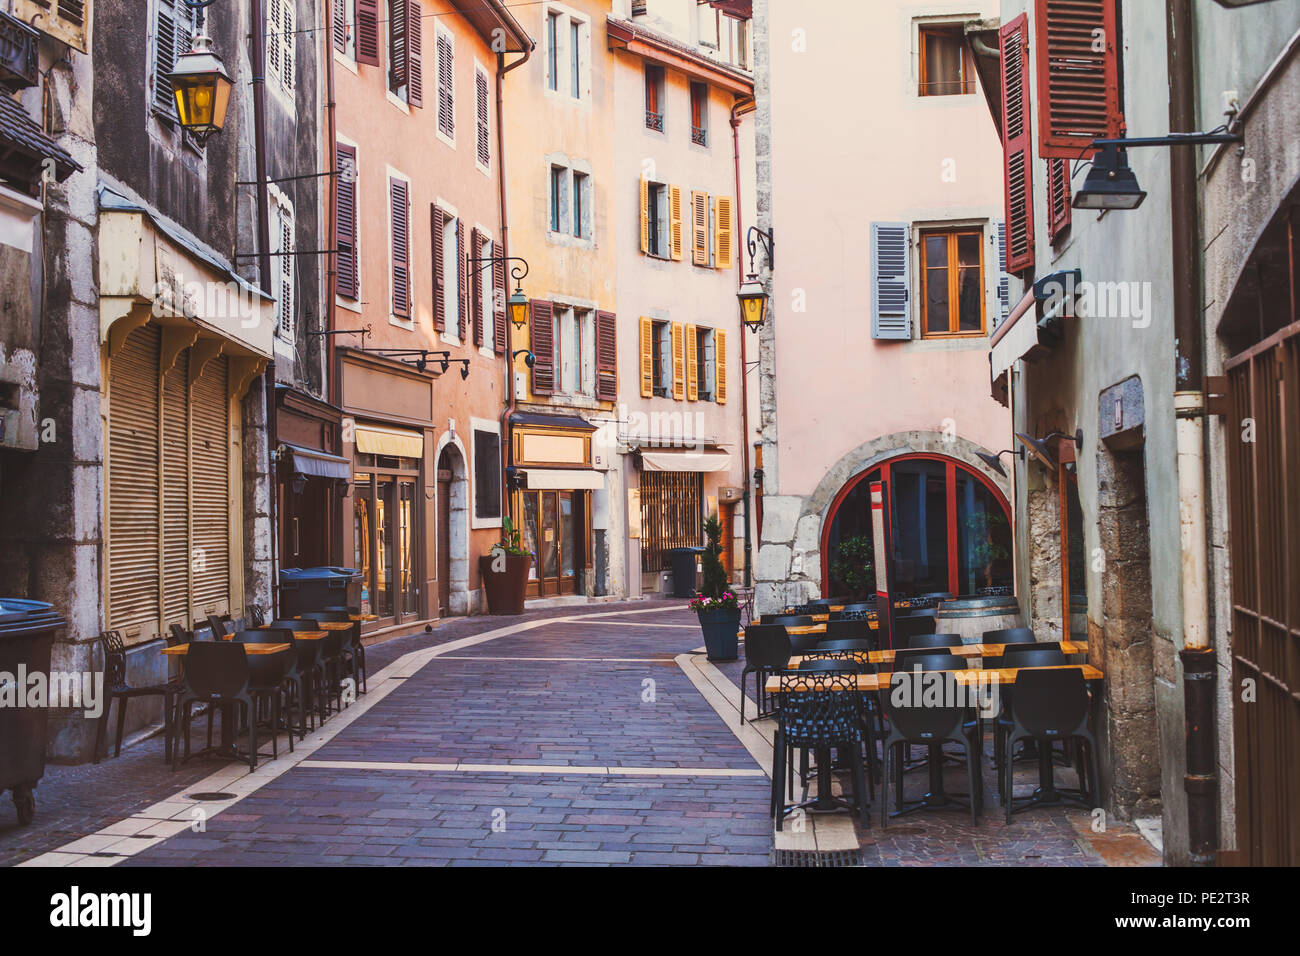 Annecy città vecchia, edifici storici nel centro città, distintiva architettura, accogliente street in Francia con pavimentazione in ciottoli e ristoranti all'aperto Foto Stock